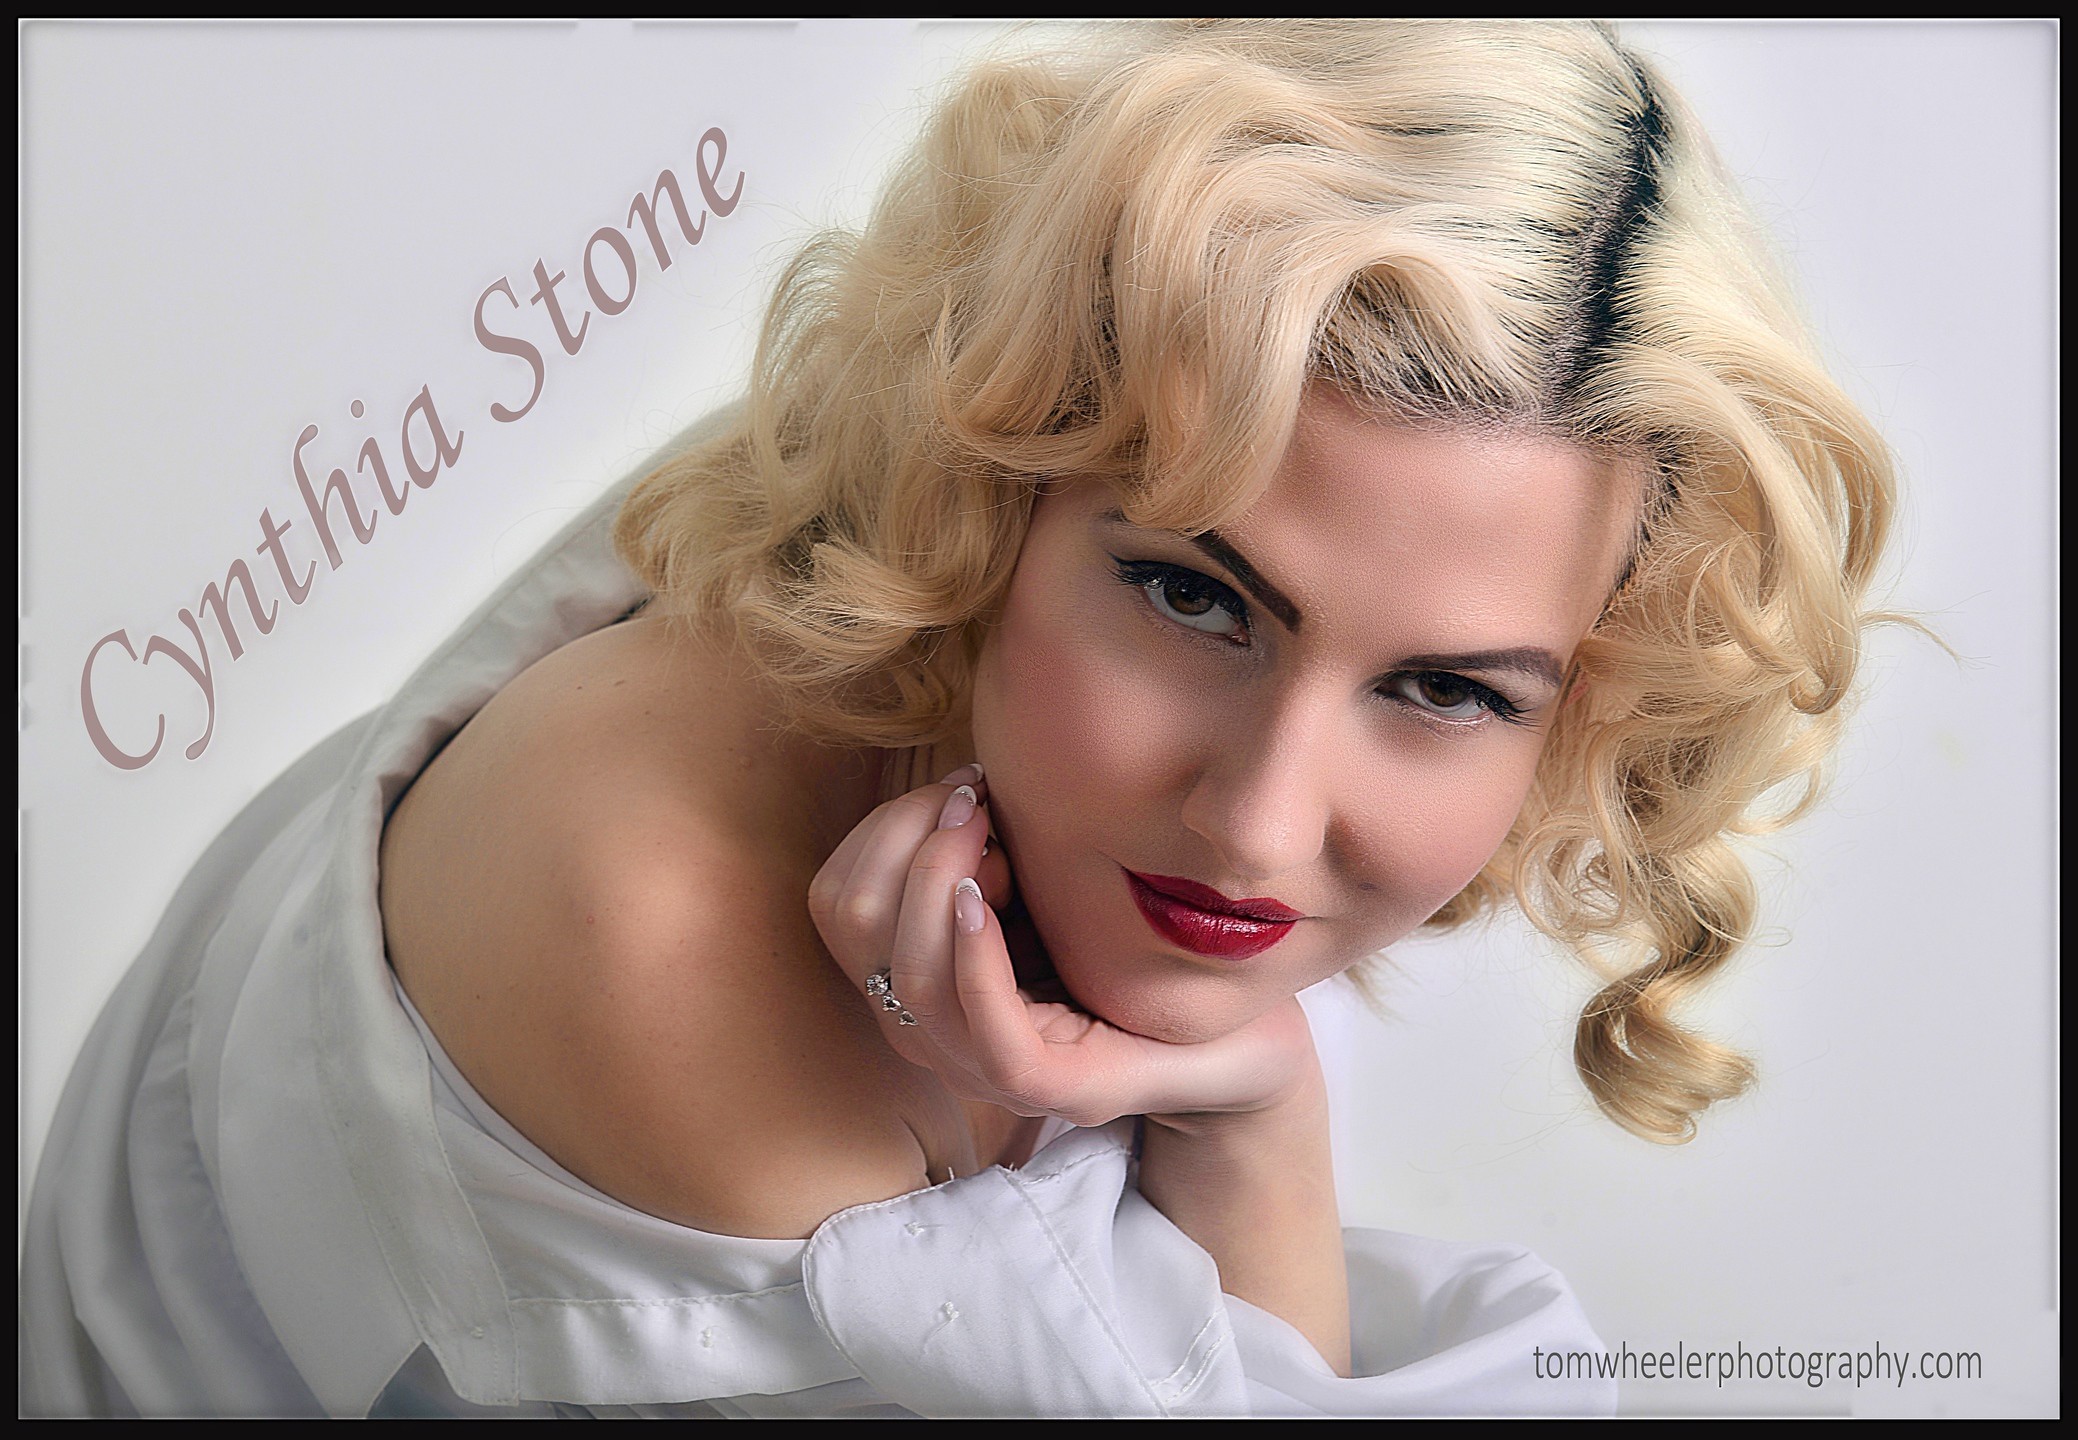 Cynthia Stone